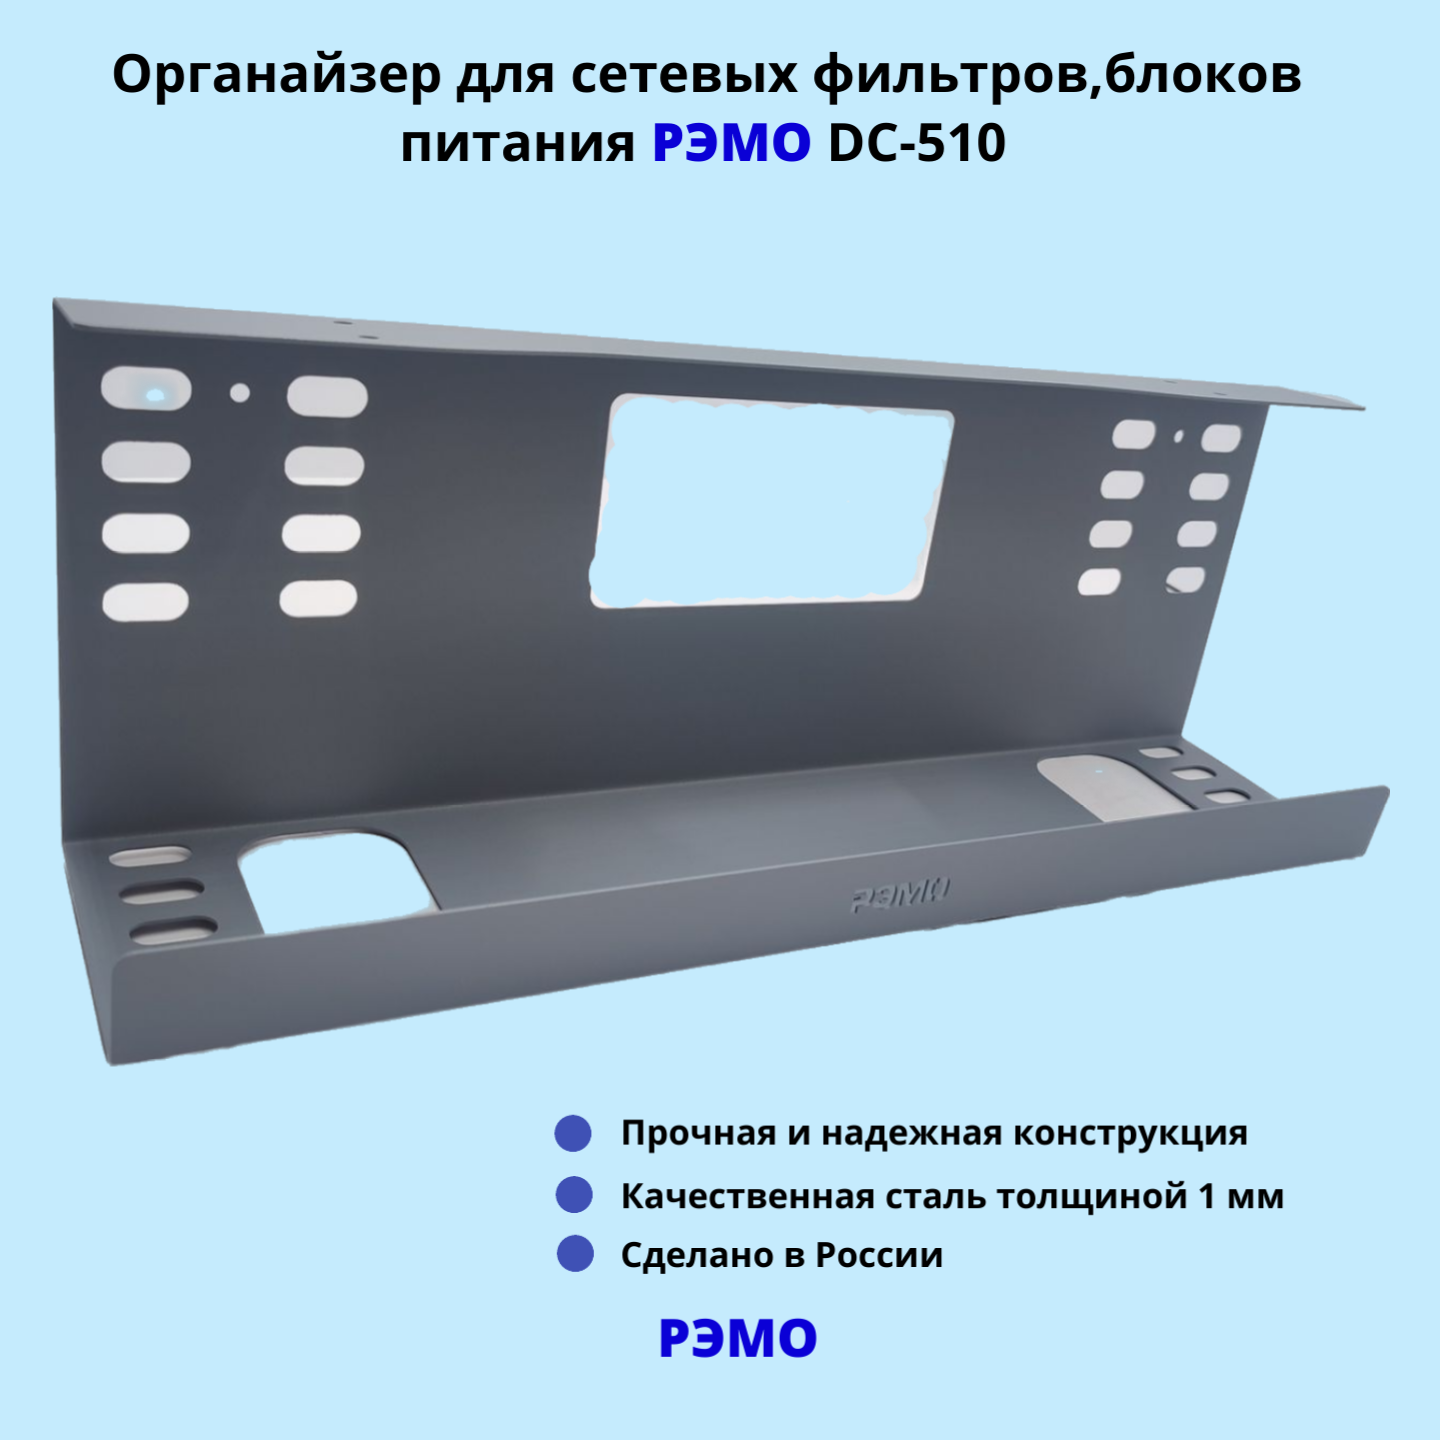 Кабельный органайзер для сетевых фильтров, блоков питания РЭМО DC-510, серый